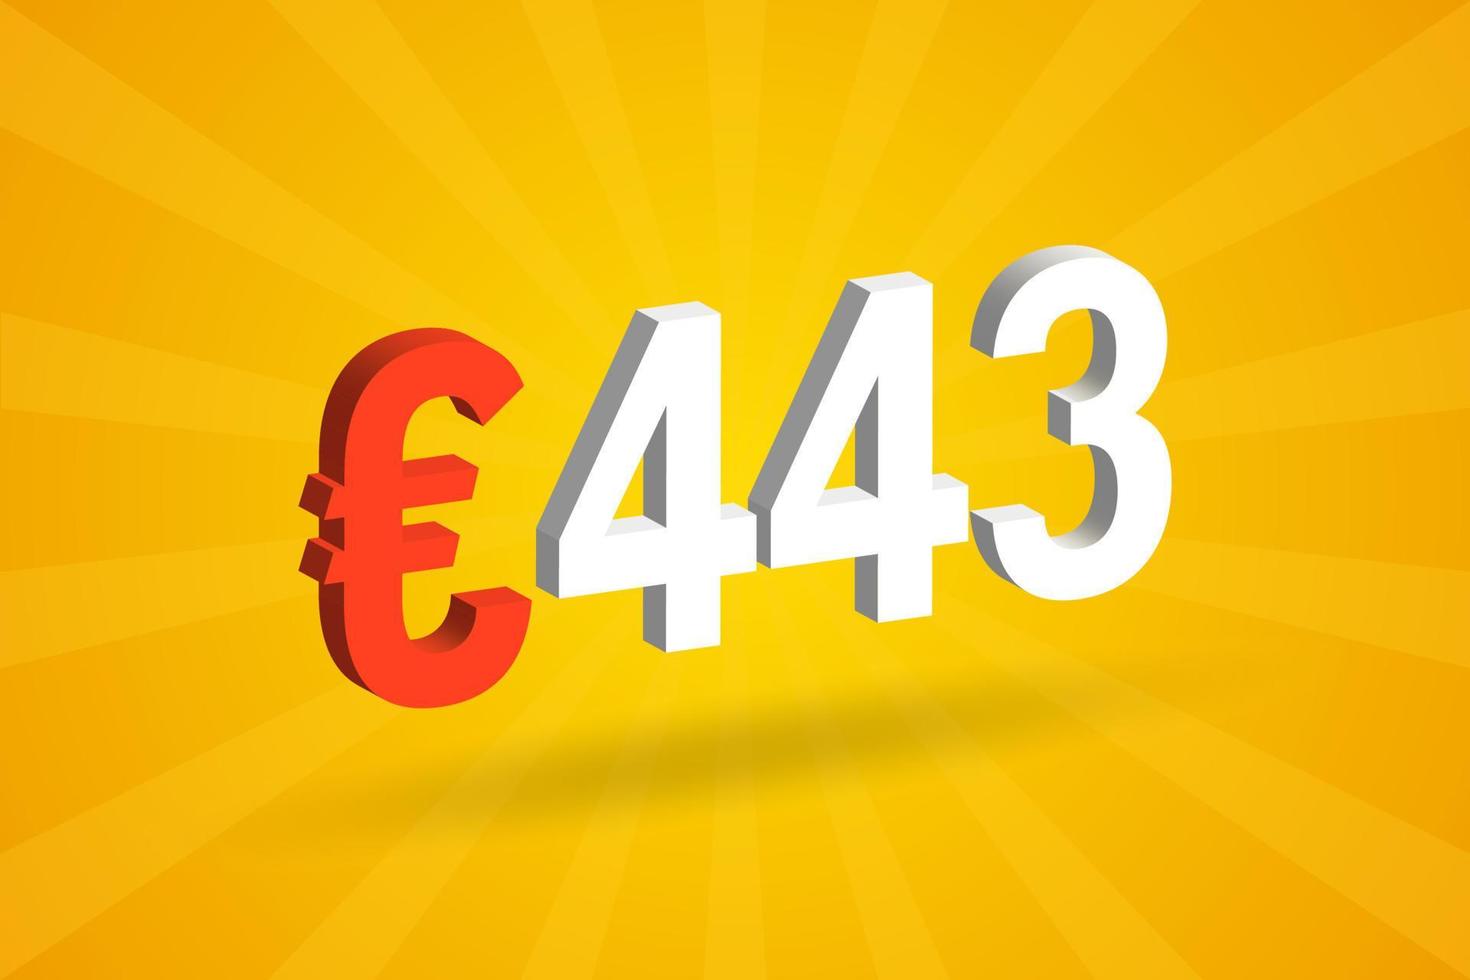 Symbole de texte vectoriel 3d de devise 443 euros. 3d 443 euro union européenne argent vecteur de stock